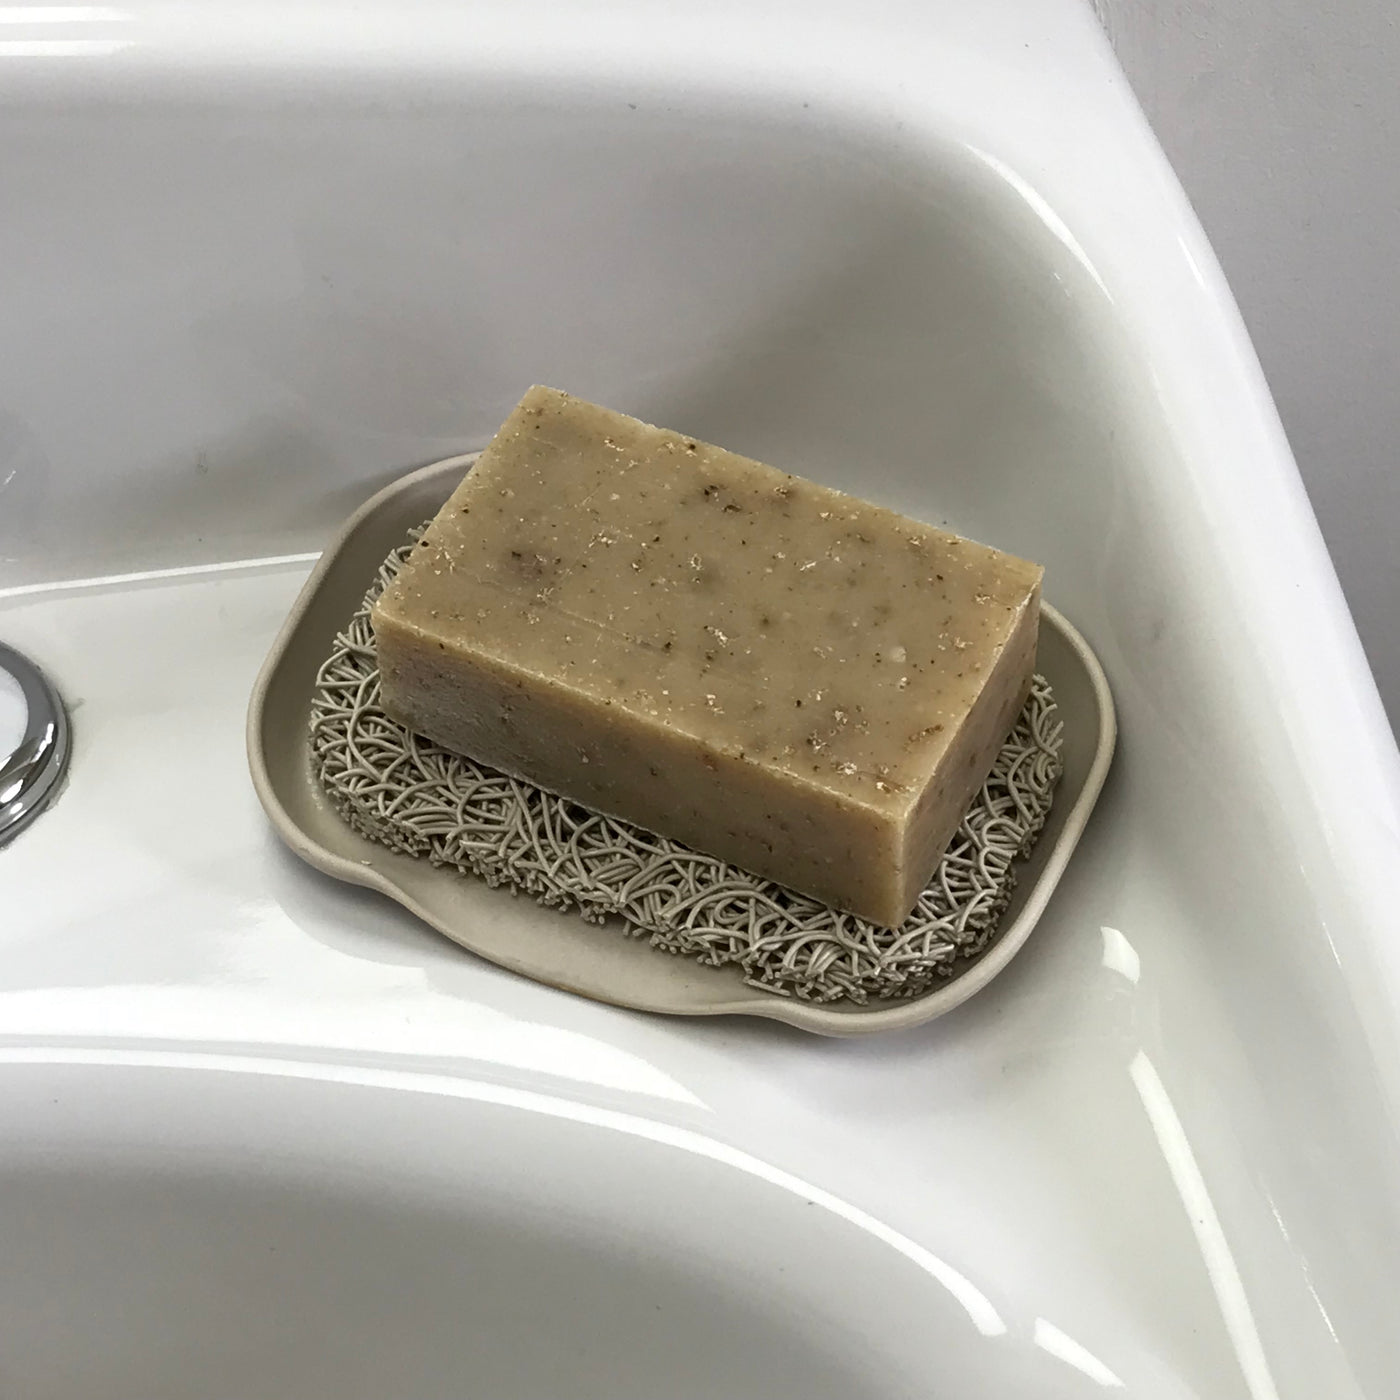 Oatmeal Clove Soap Bar